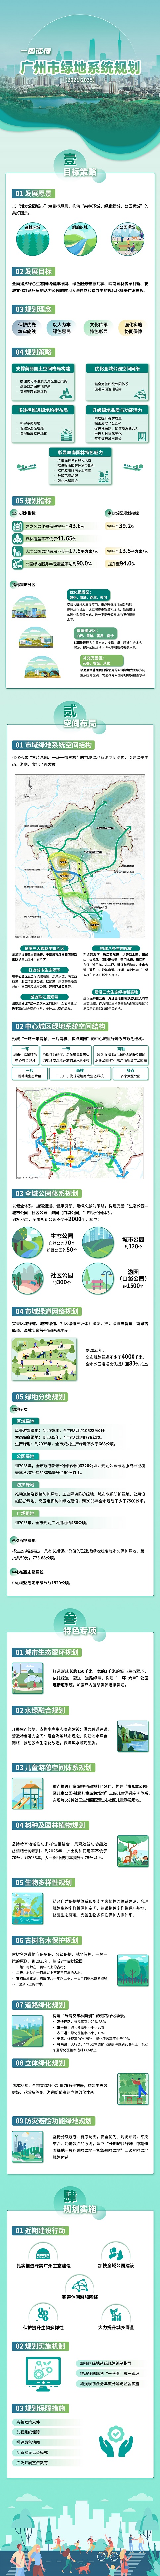 广州市绿地系统规划政策解读（一图读懂）09152726.jpg